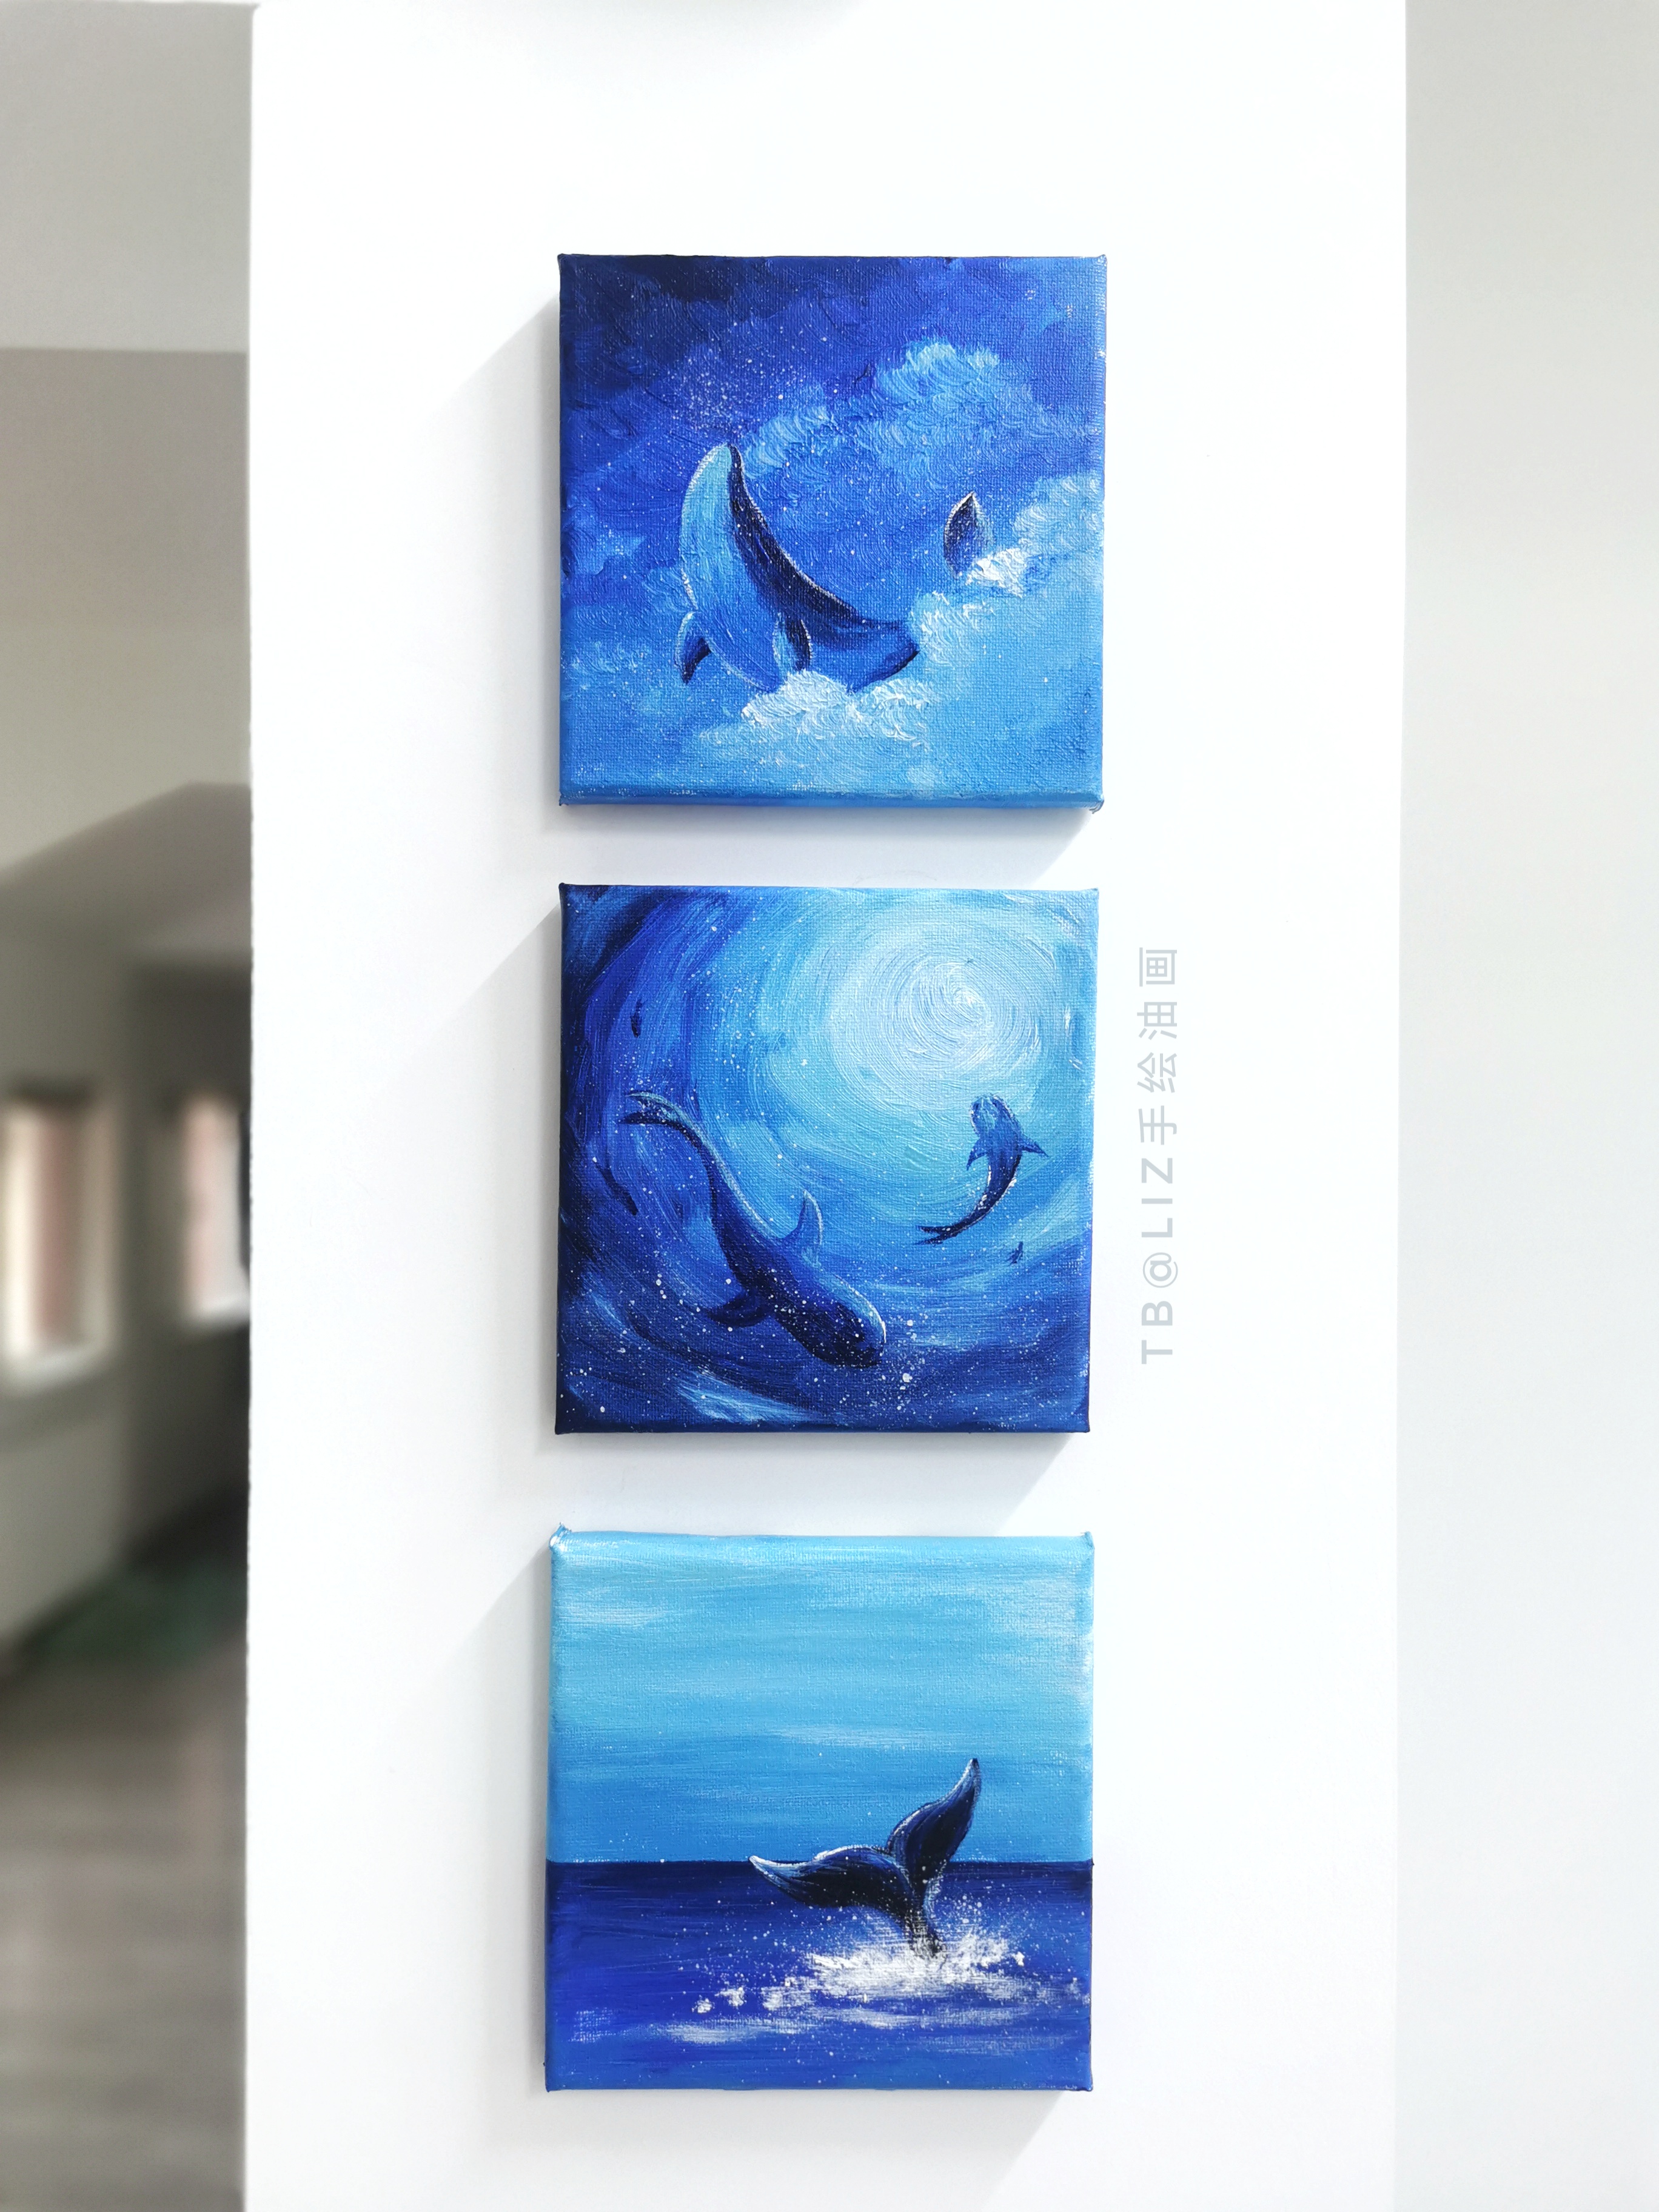 迷你小油画手绘大海海豚鲸鱼鲨鱼海底风景清新文艺桌面摆件装饰画